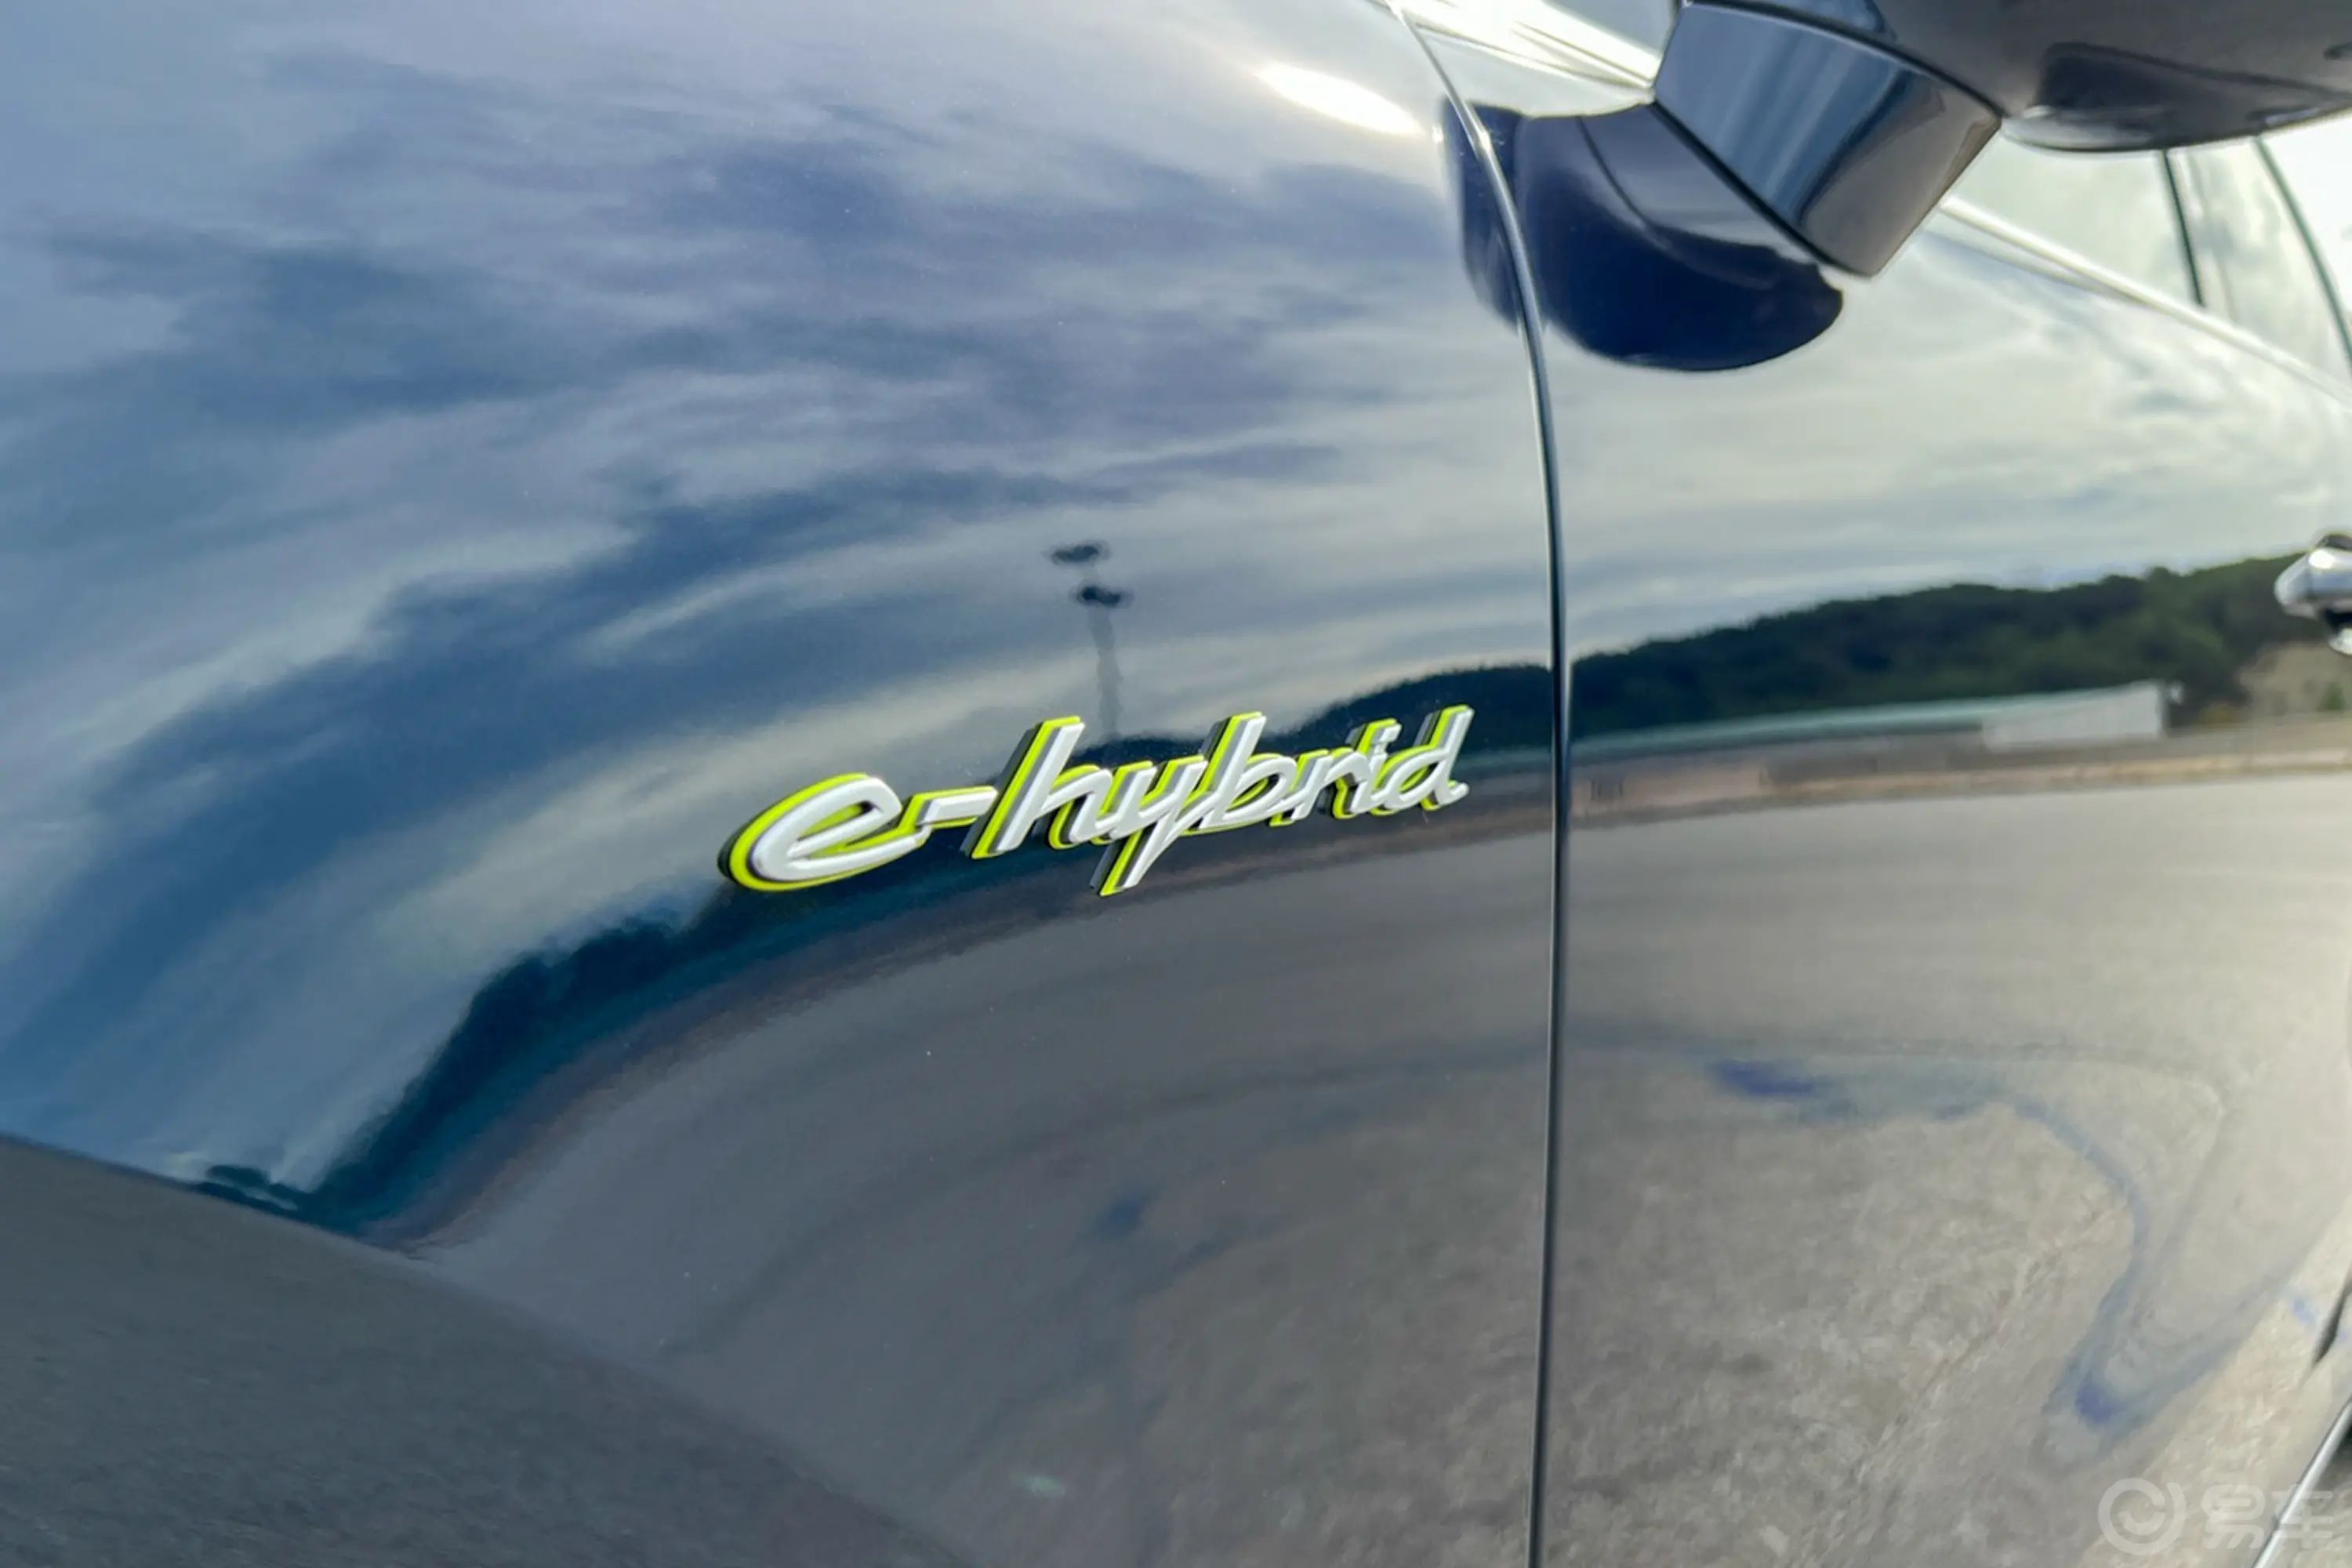 Cayenne E-HybridCayenne Turbo 4.0T外观